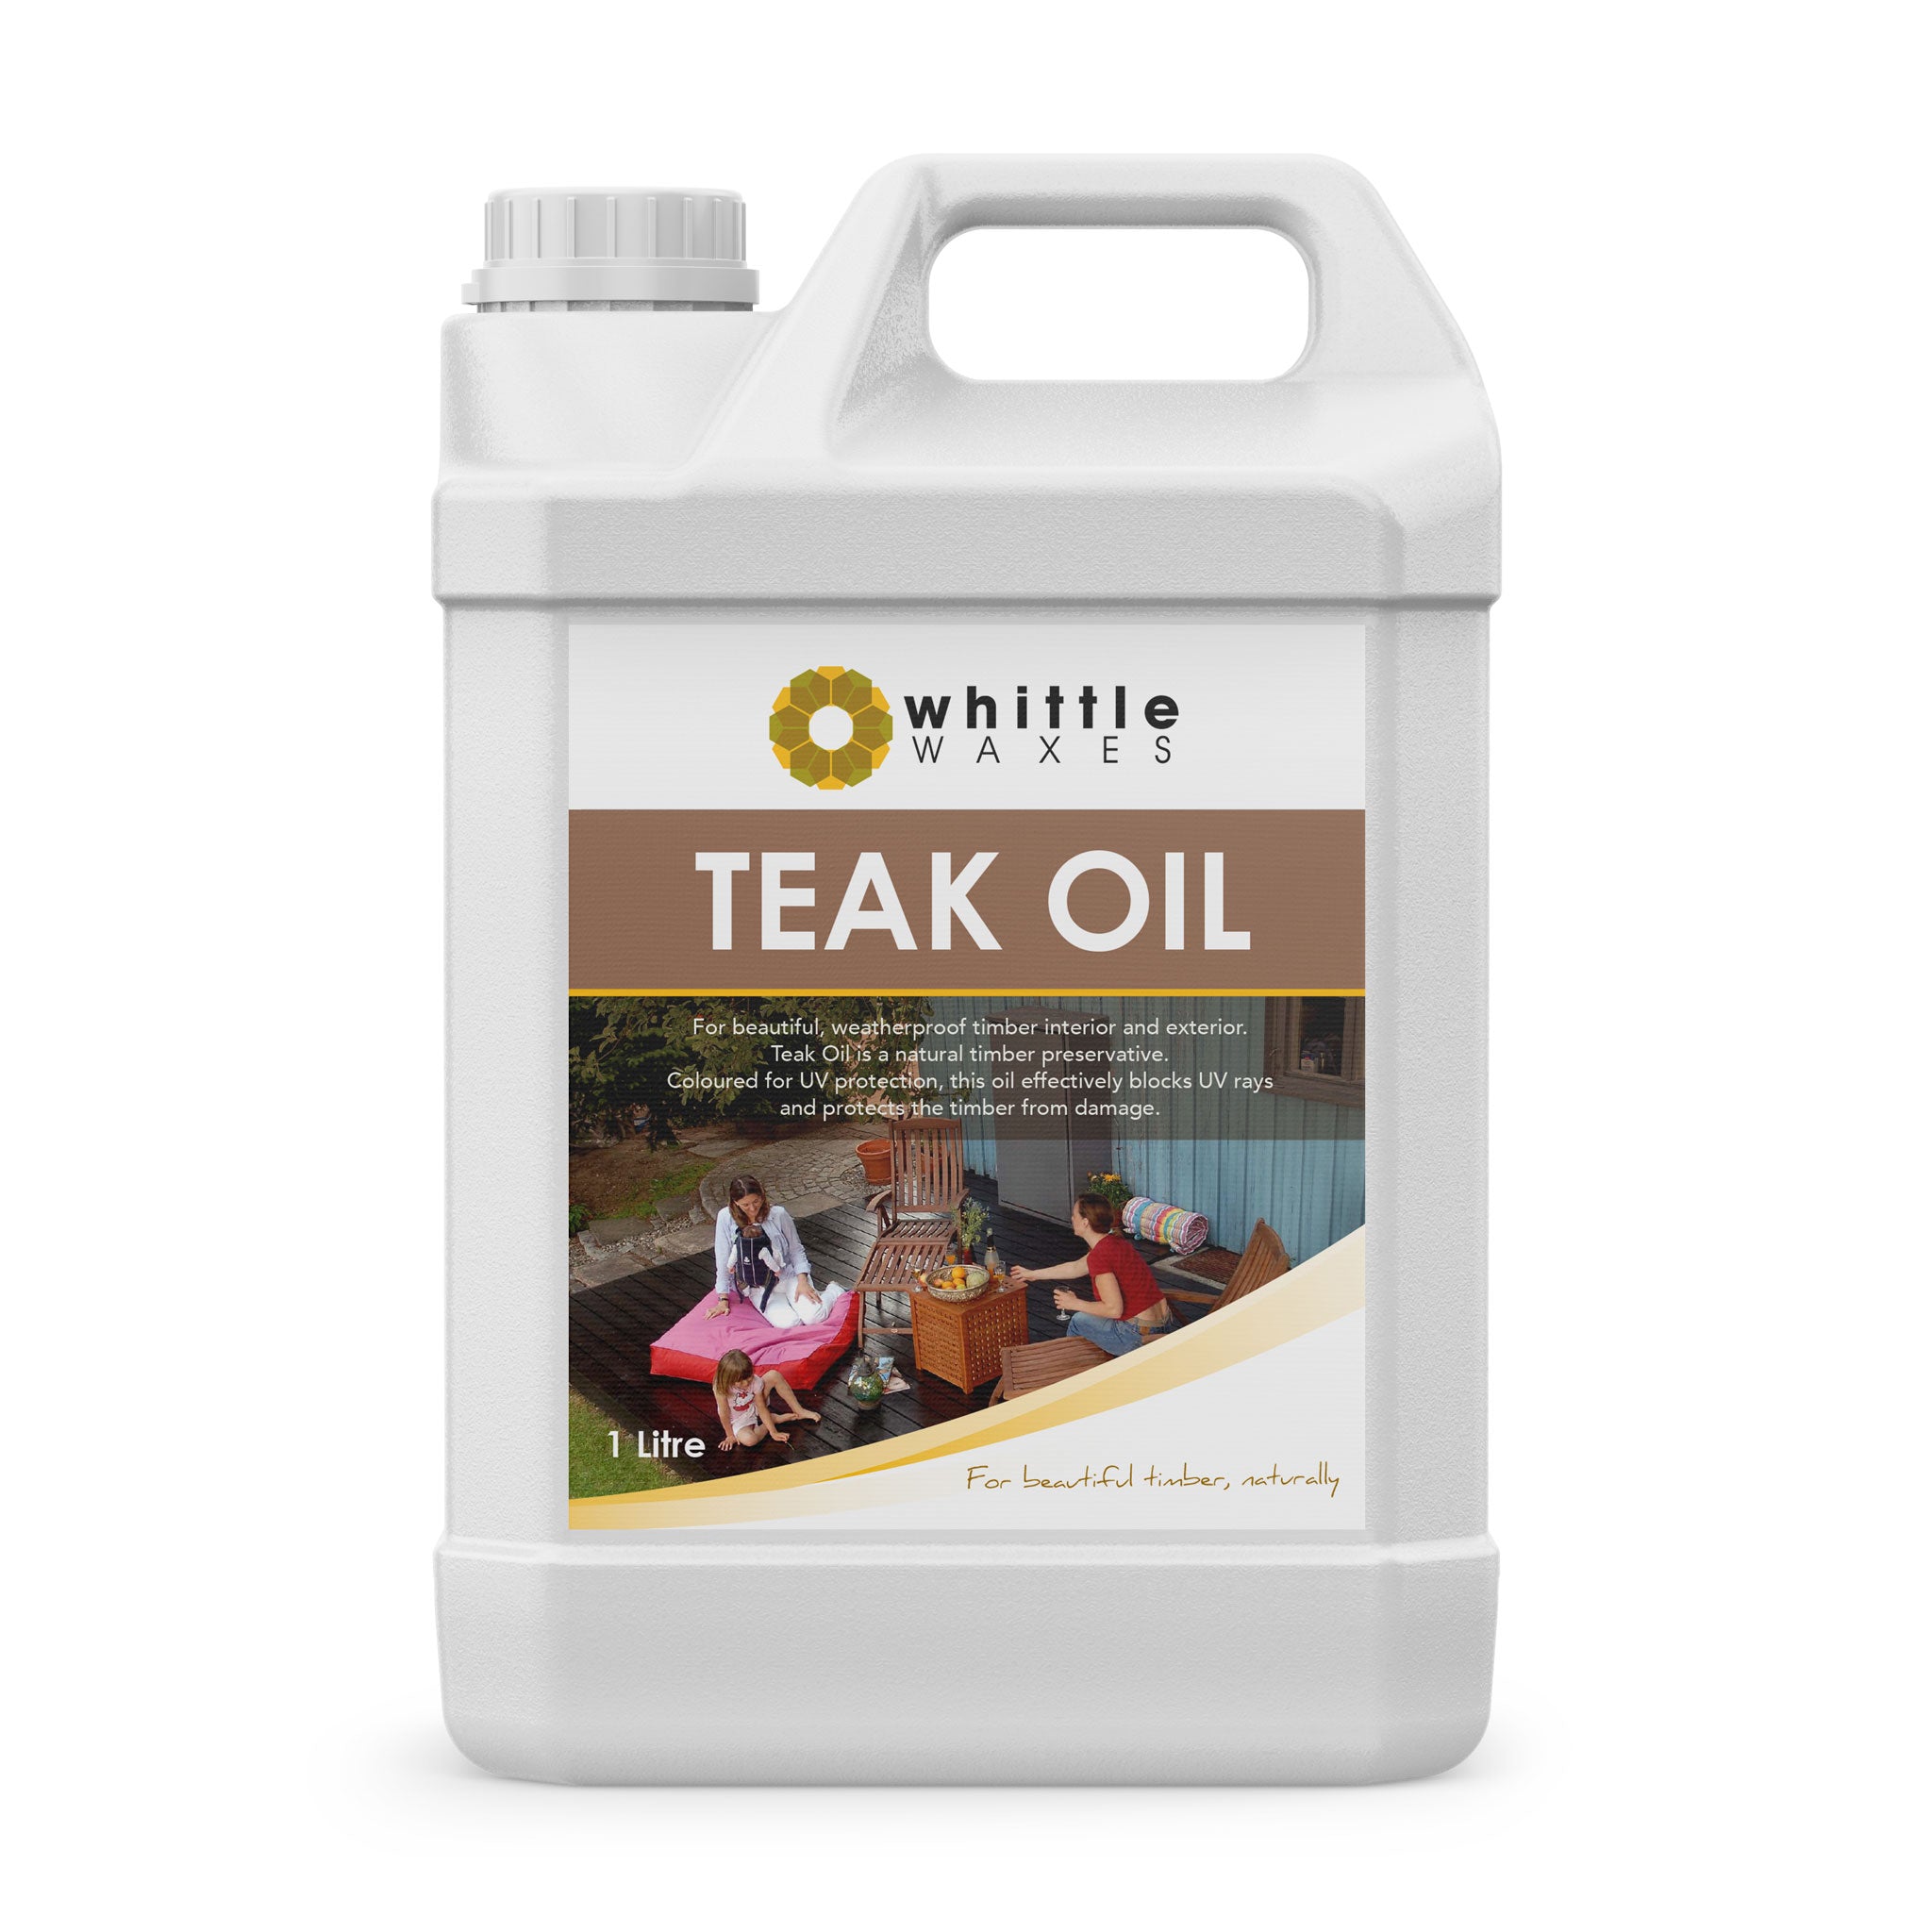 Whittle Waxes Teak Oil - for beautiful weatherproof decks - 1 litre